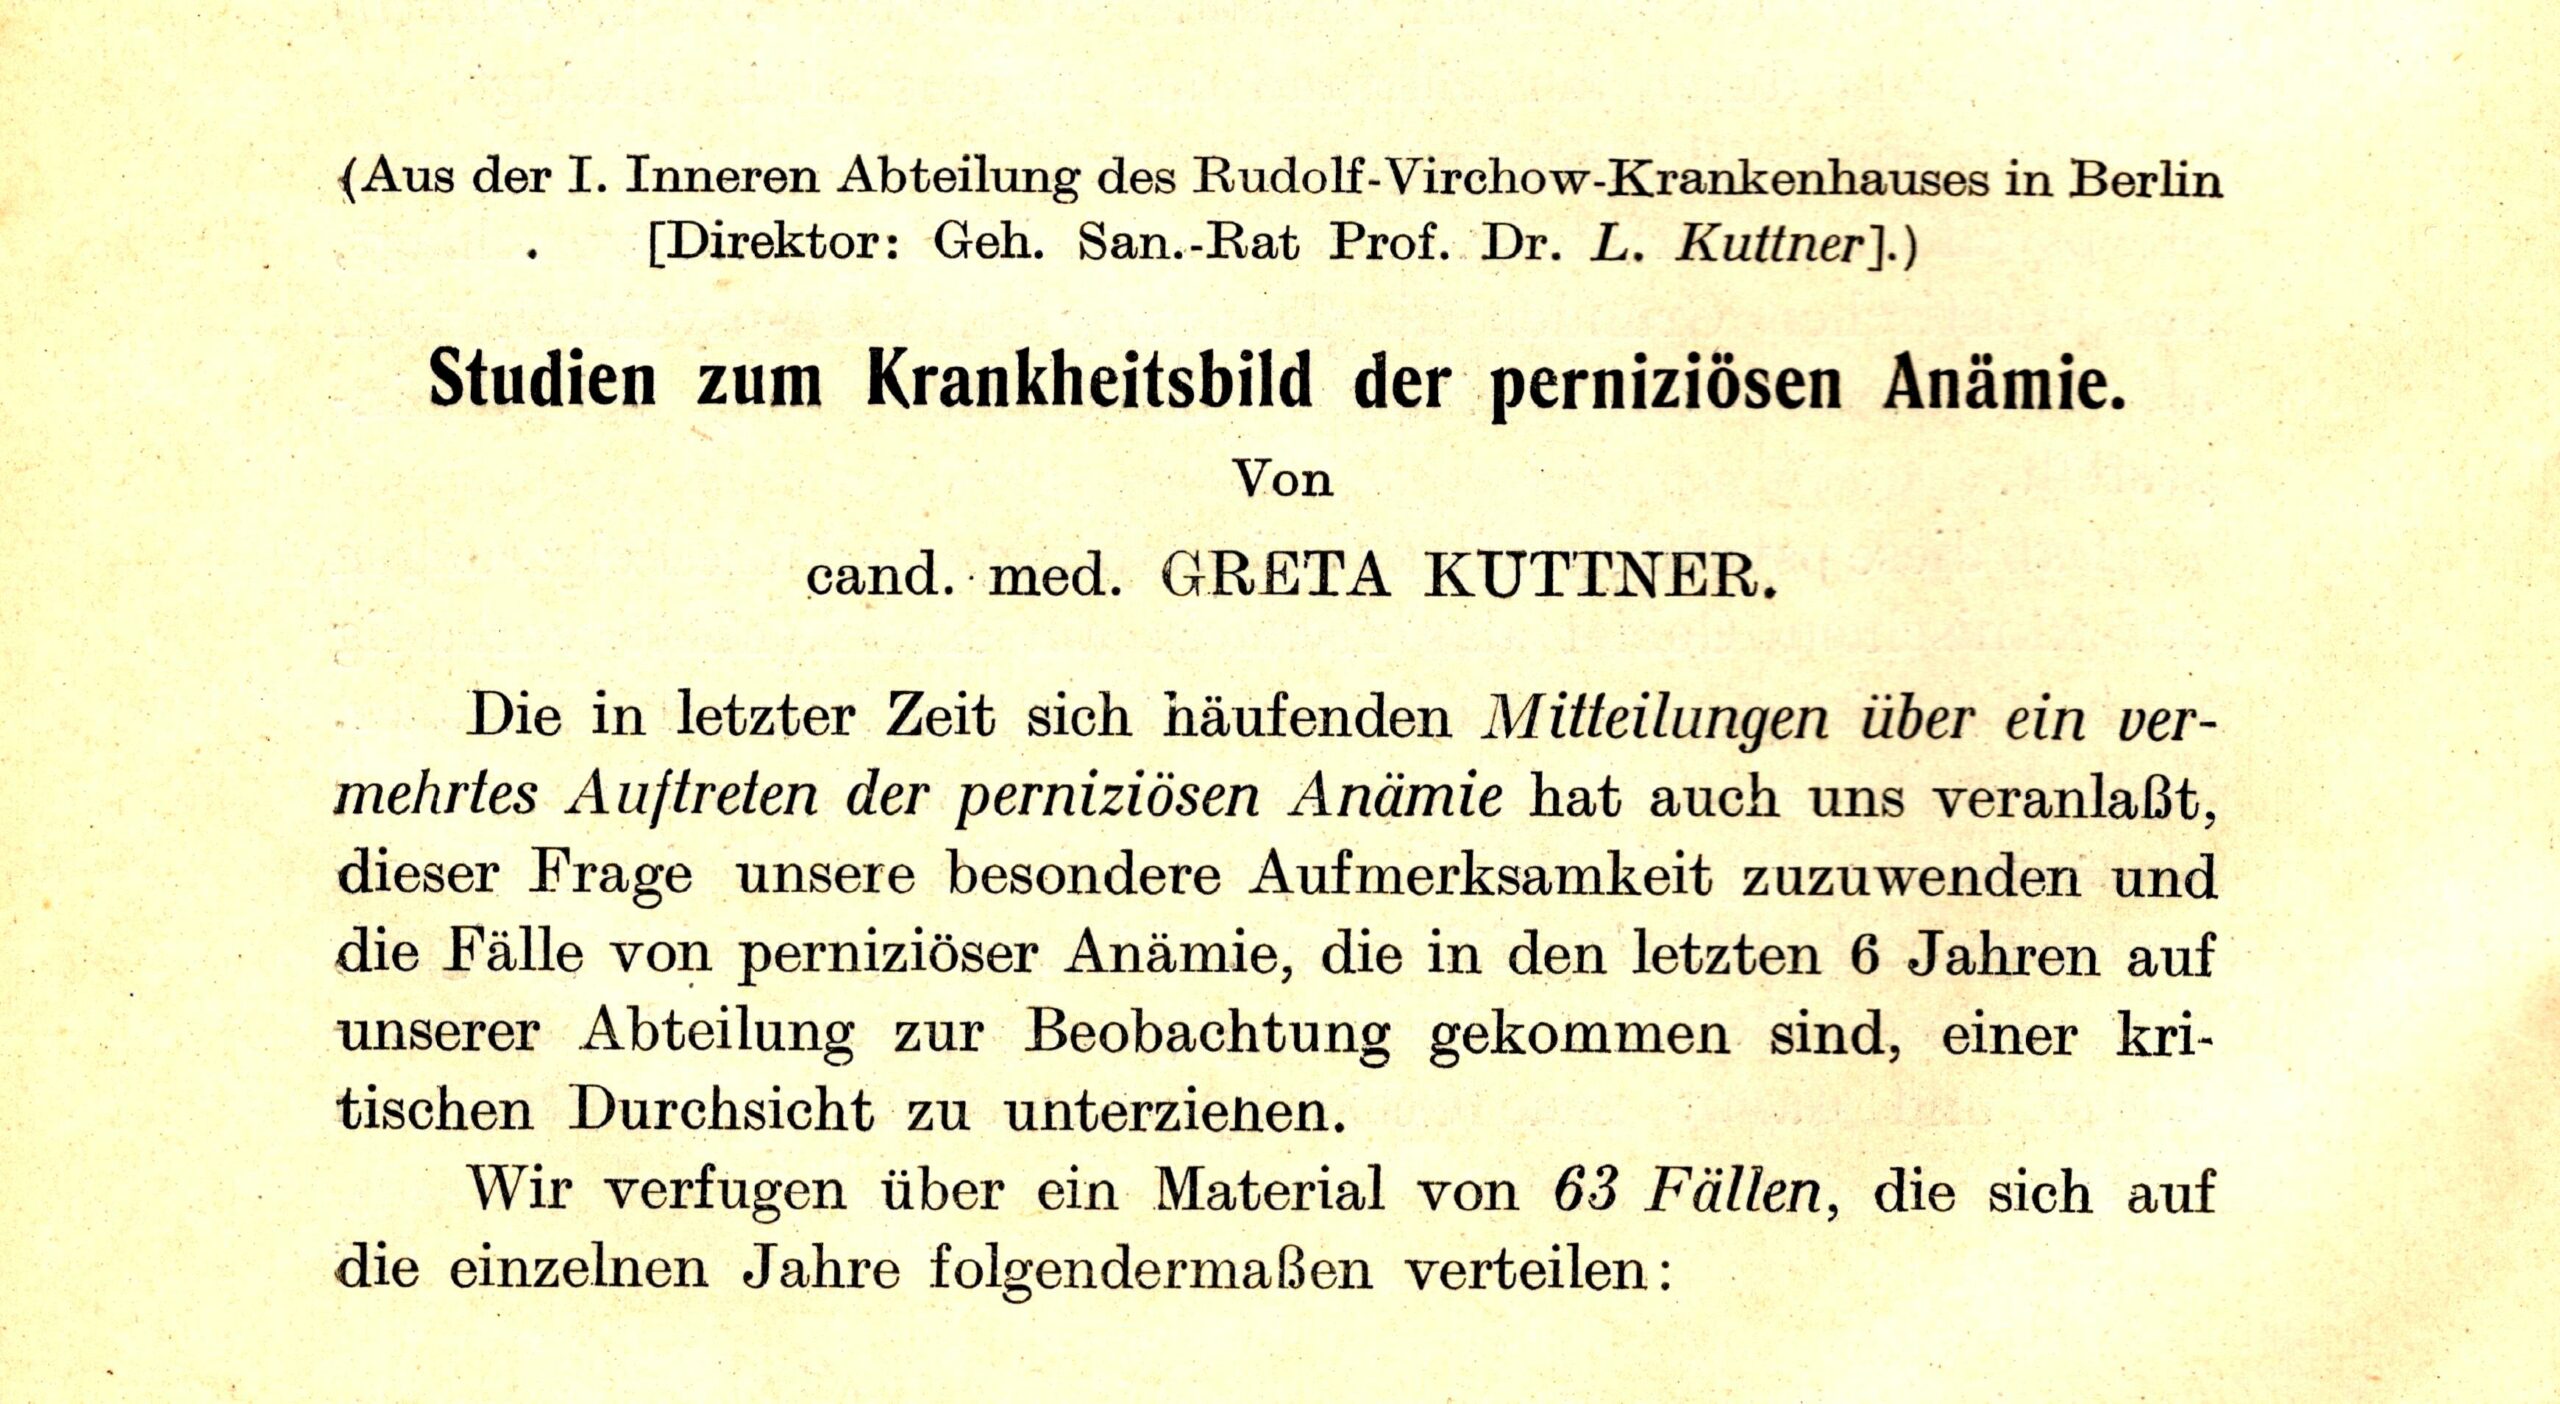 Archiv für Verdauungs-Krankheiten 1926, Special edition for Leopold Kuttner